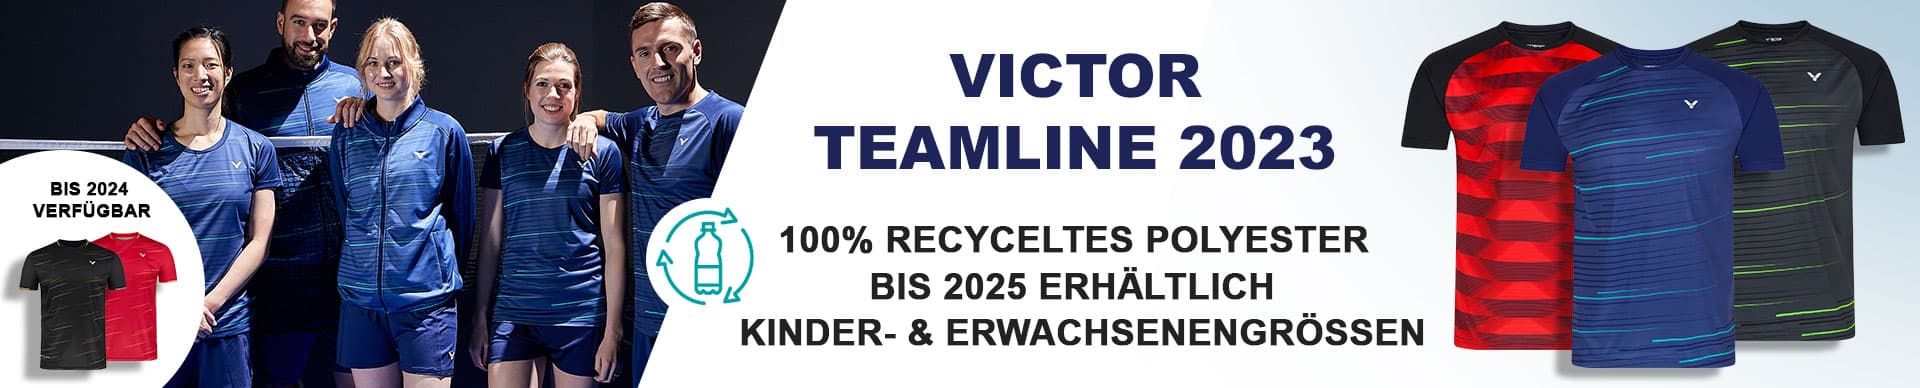 victor-team-bekleidung-2023-badminton-vereine-mannschaft